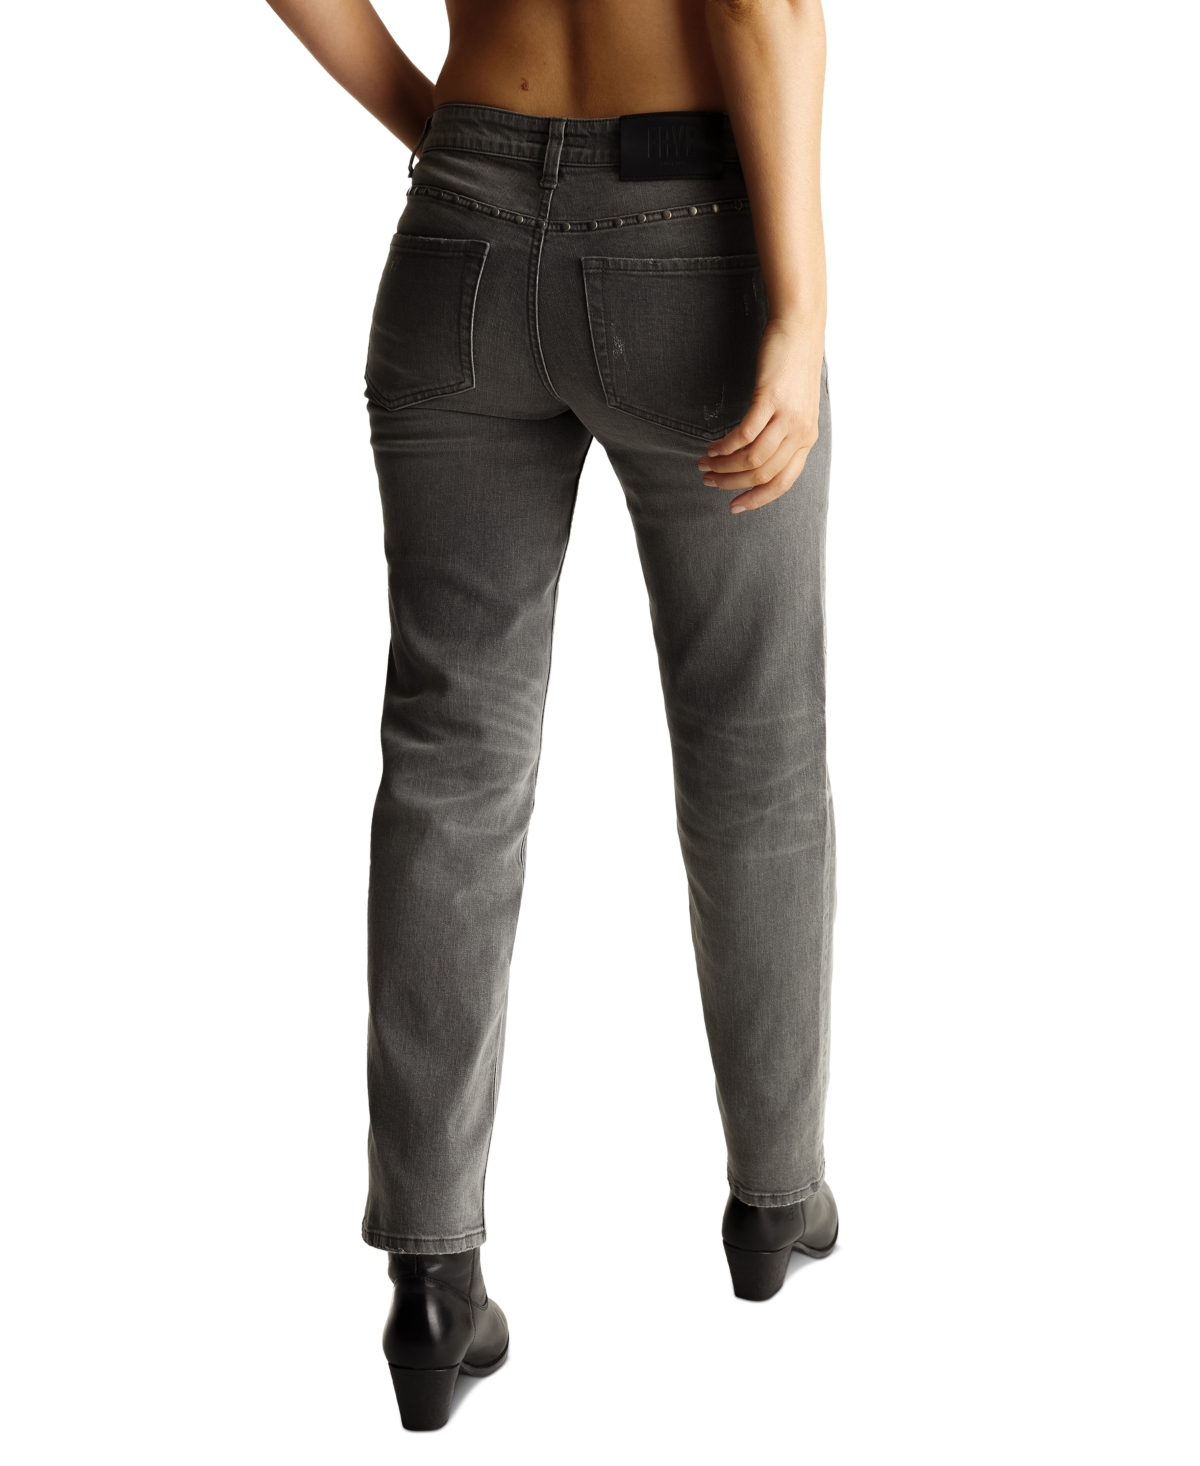 Shop Frye Women's Low-rise Straight-leg Studded Jeans In Rowan Wash,grey,black Wash